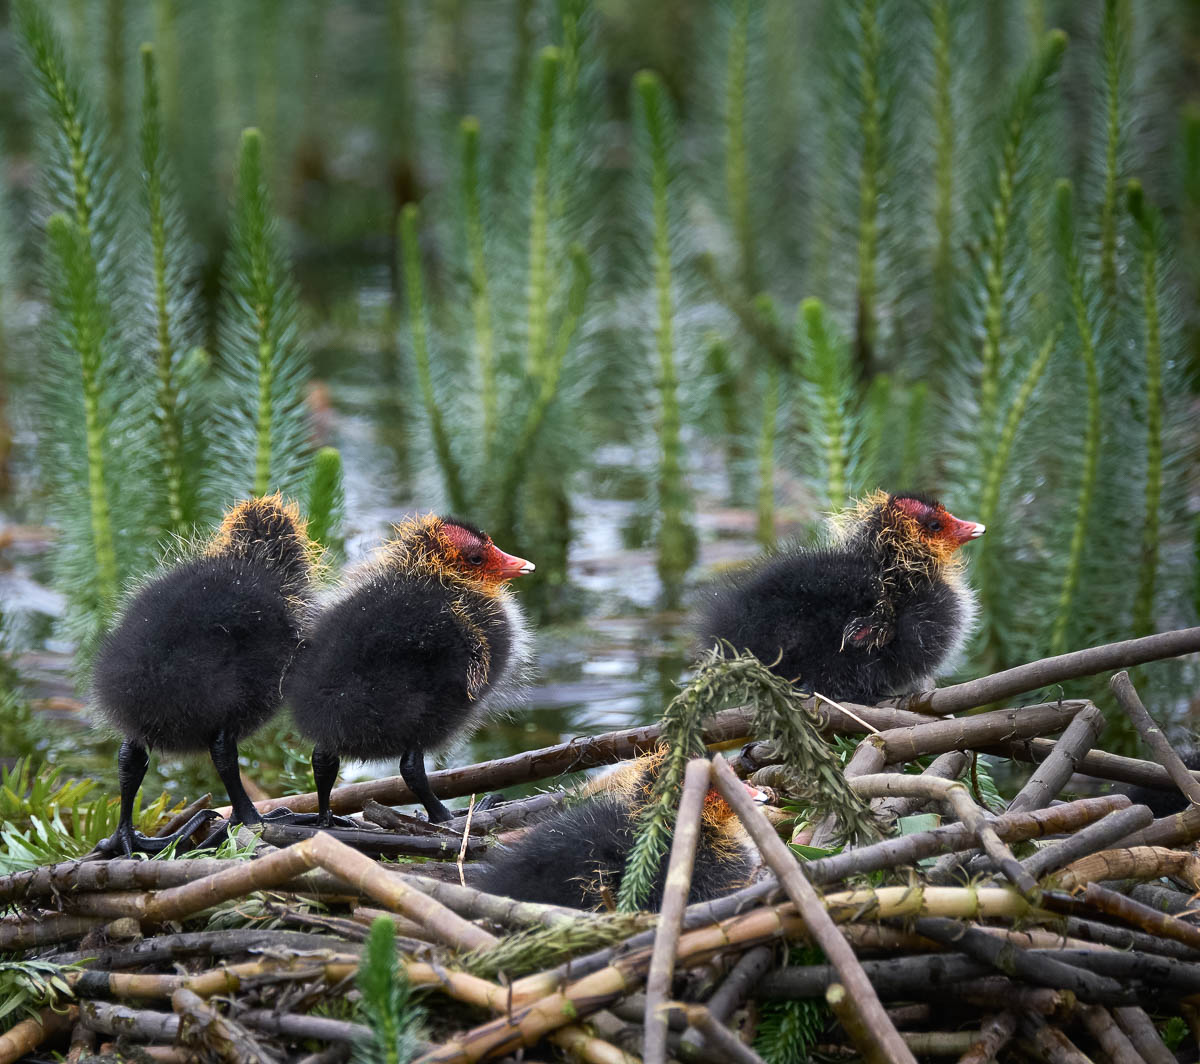 three coot chicks